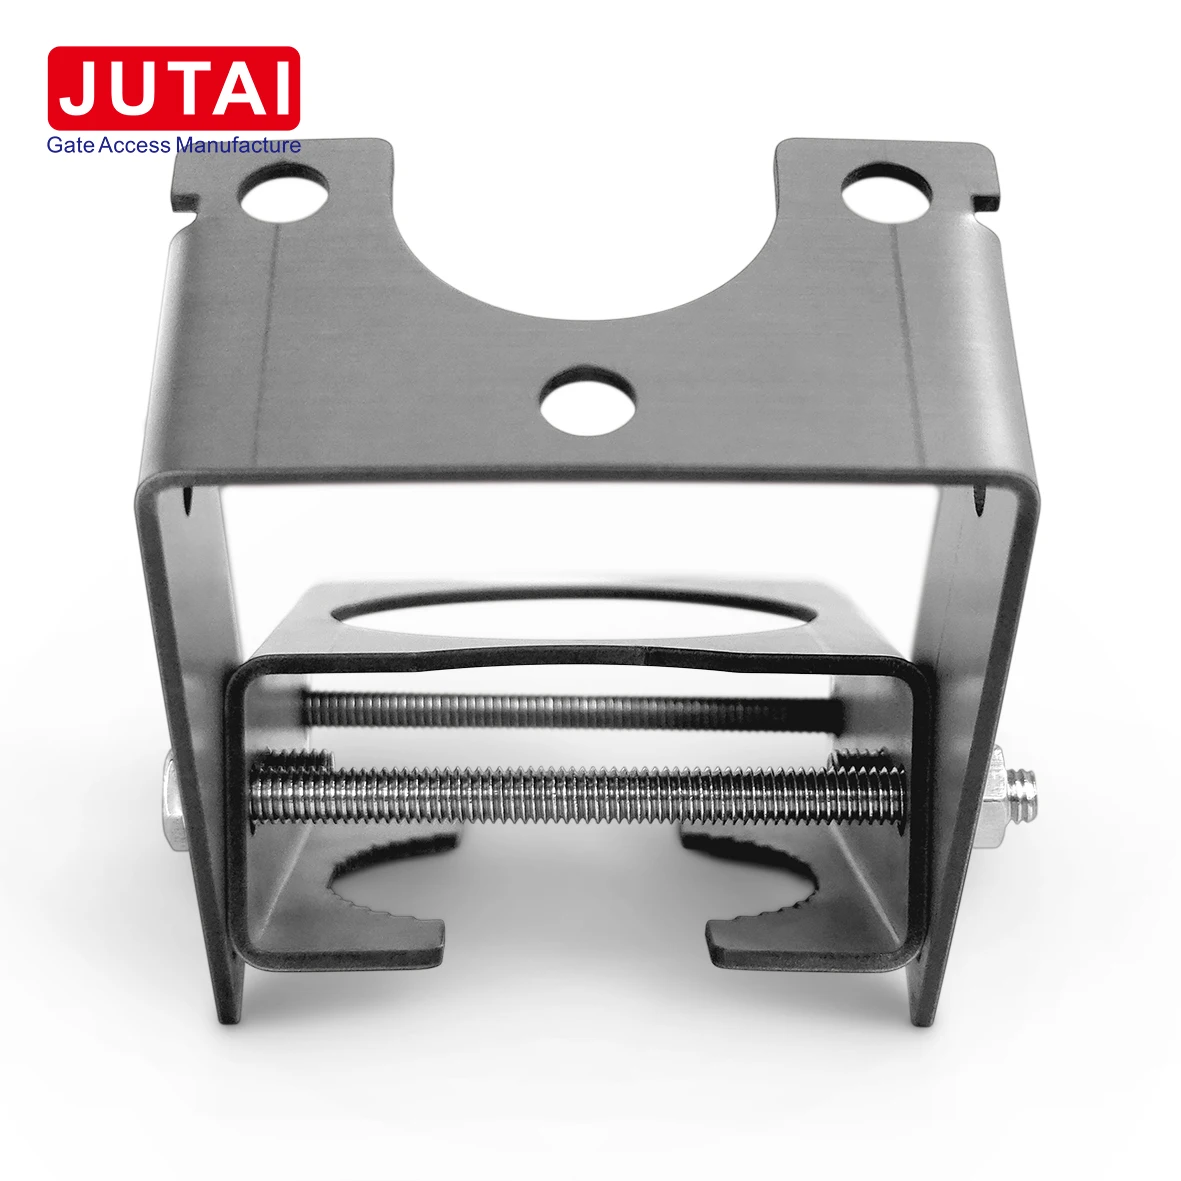 يشتمل القارئ النشط JUTAI طويل المدى UHF RFID على علامات نشطة